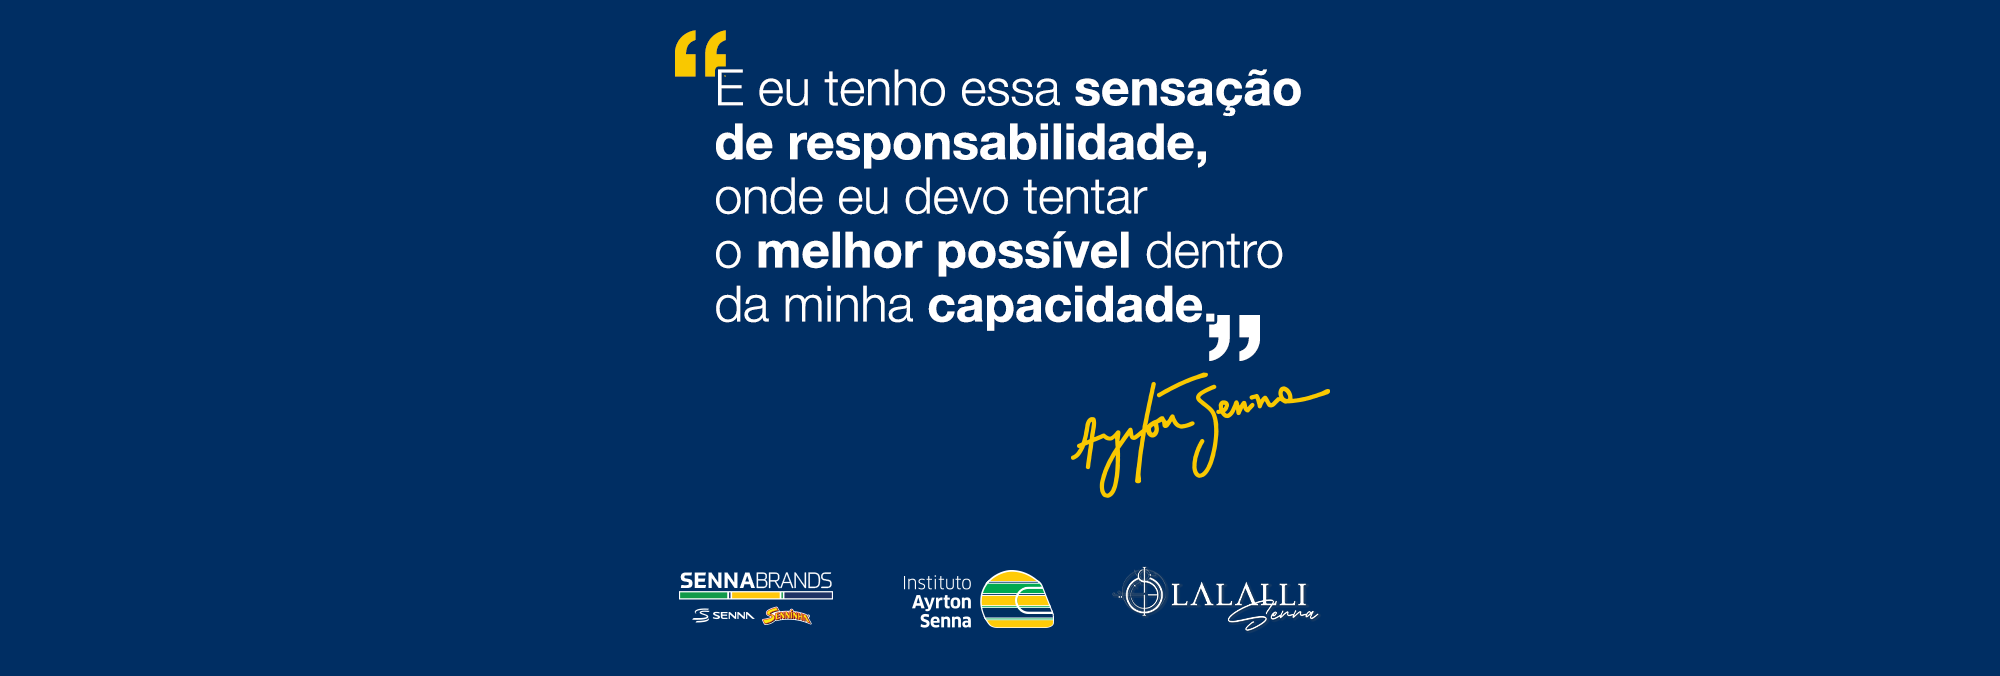 Banner azul com frase em português sobre responsabilidade e fazer o melhor, atribuída a Ayrton Senna, com logos da SennaBrands, Instituto Ayrton Senna e Ajuda ao Rio Grande do Sul na parte inferior.